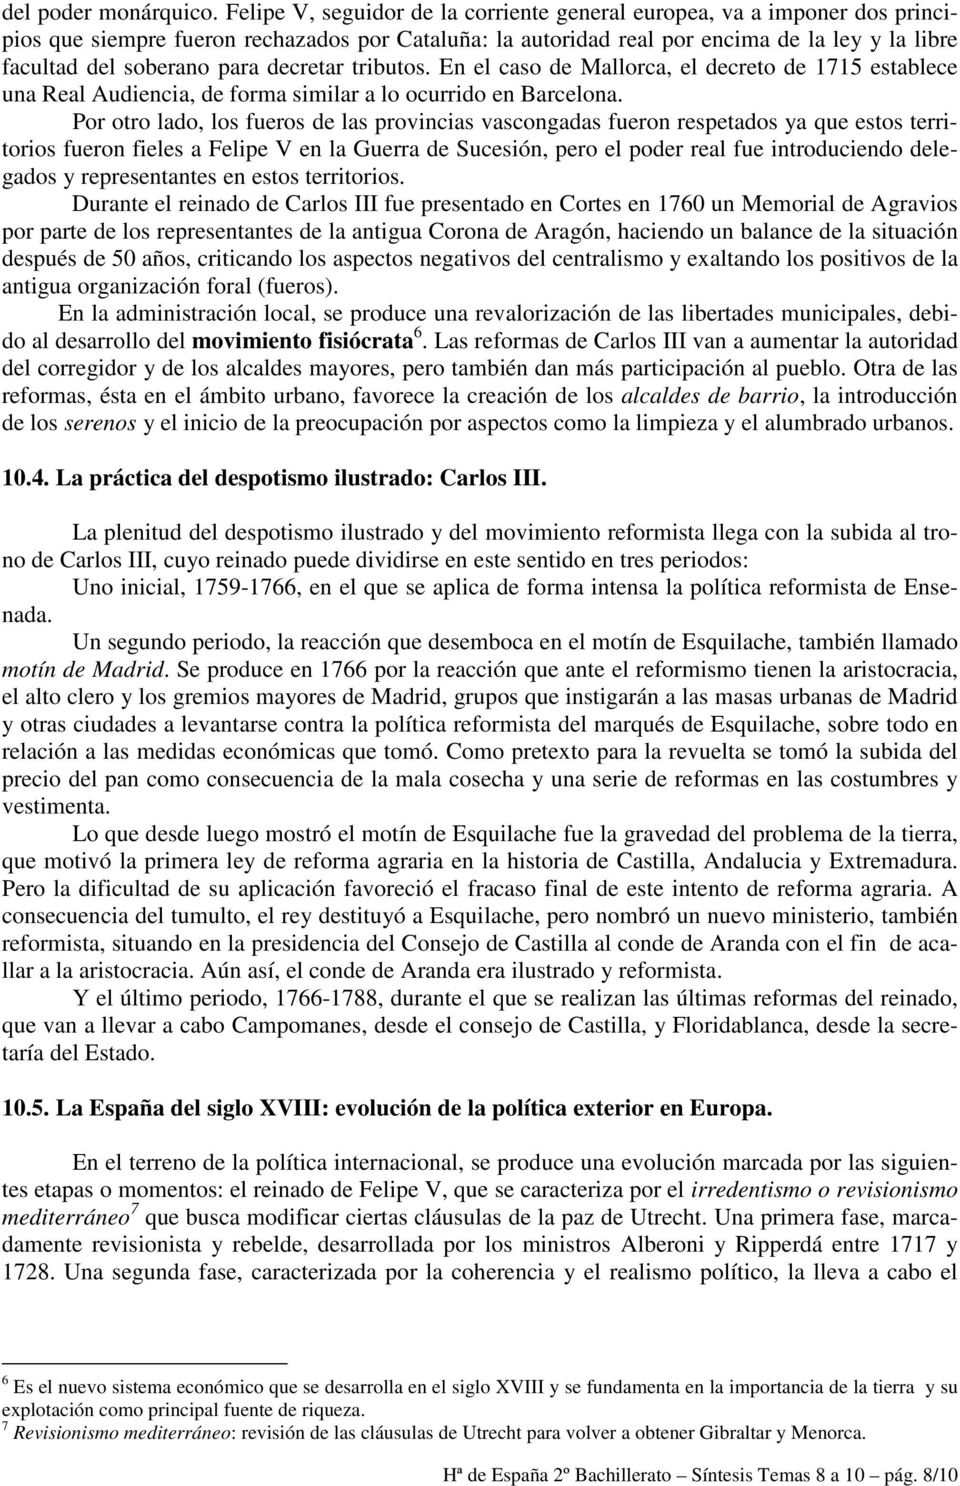 para decretar tributos. En el caso de Mallorca, el decreto de 1715 establece una Real Audiencia, de forma similar a lo ocurrido en Barcelona.